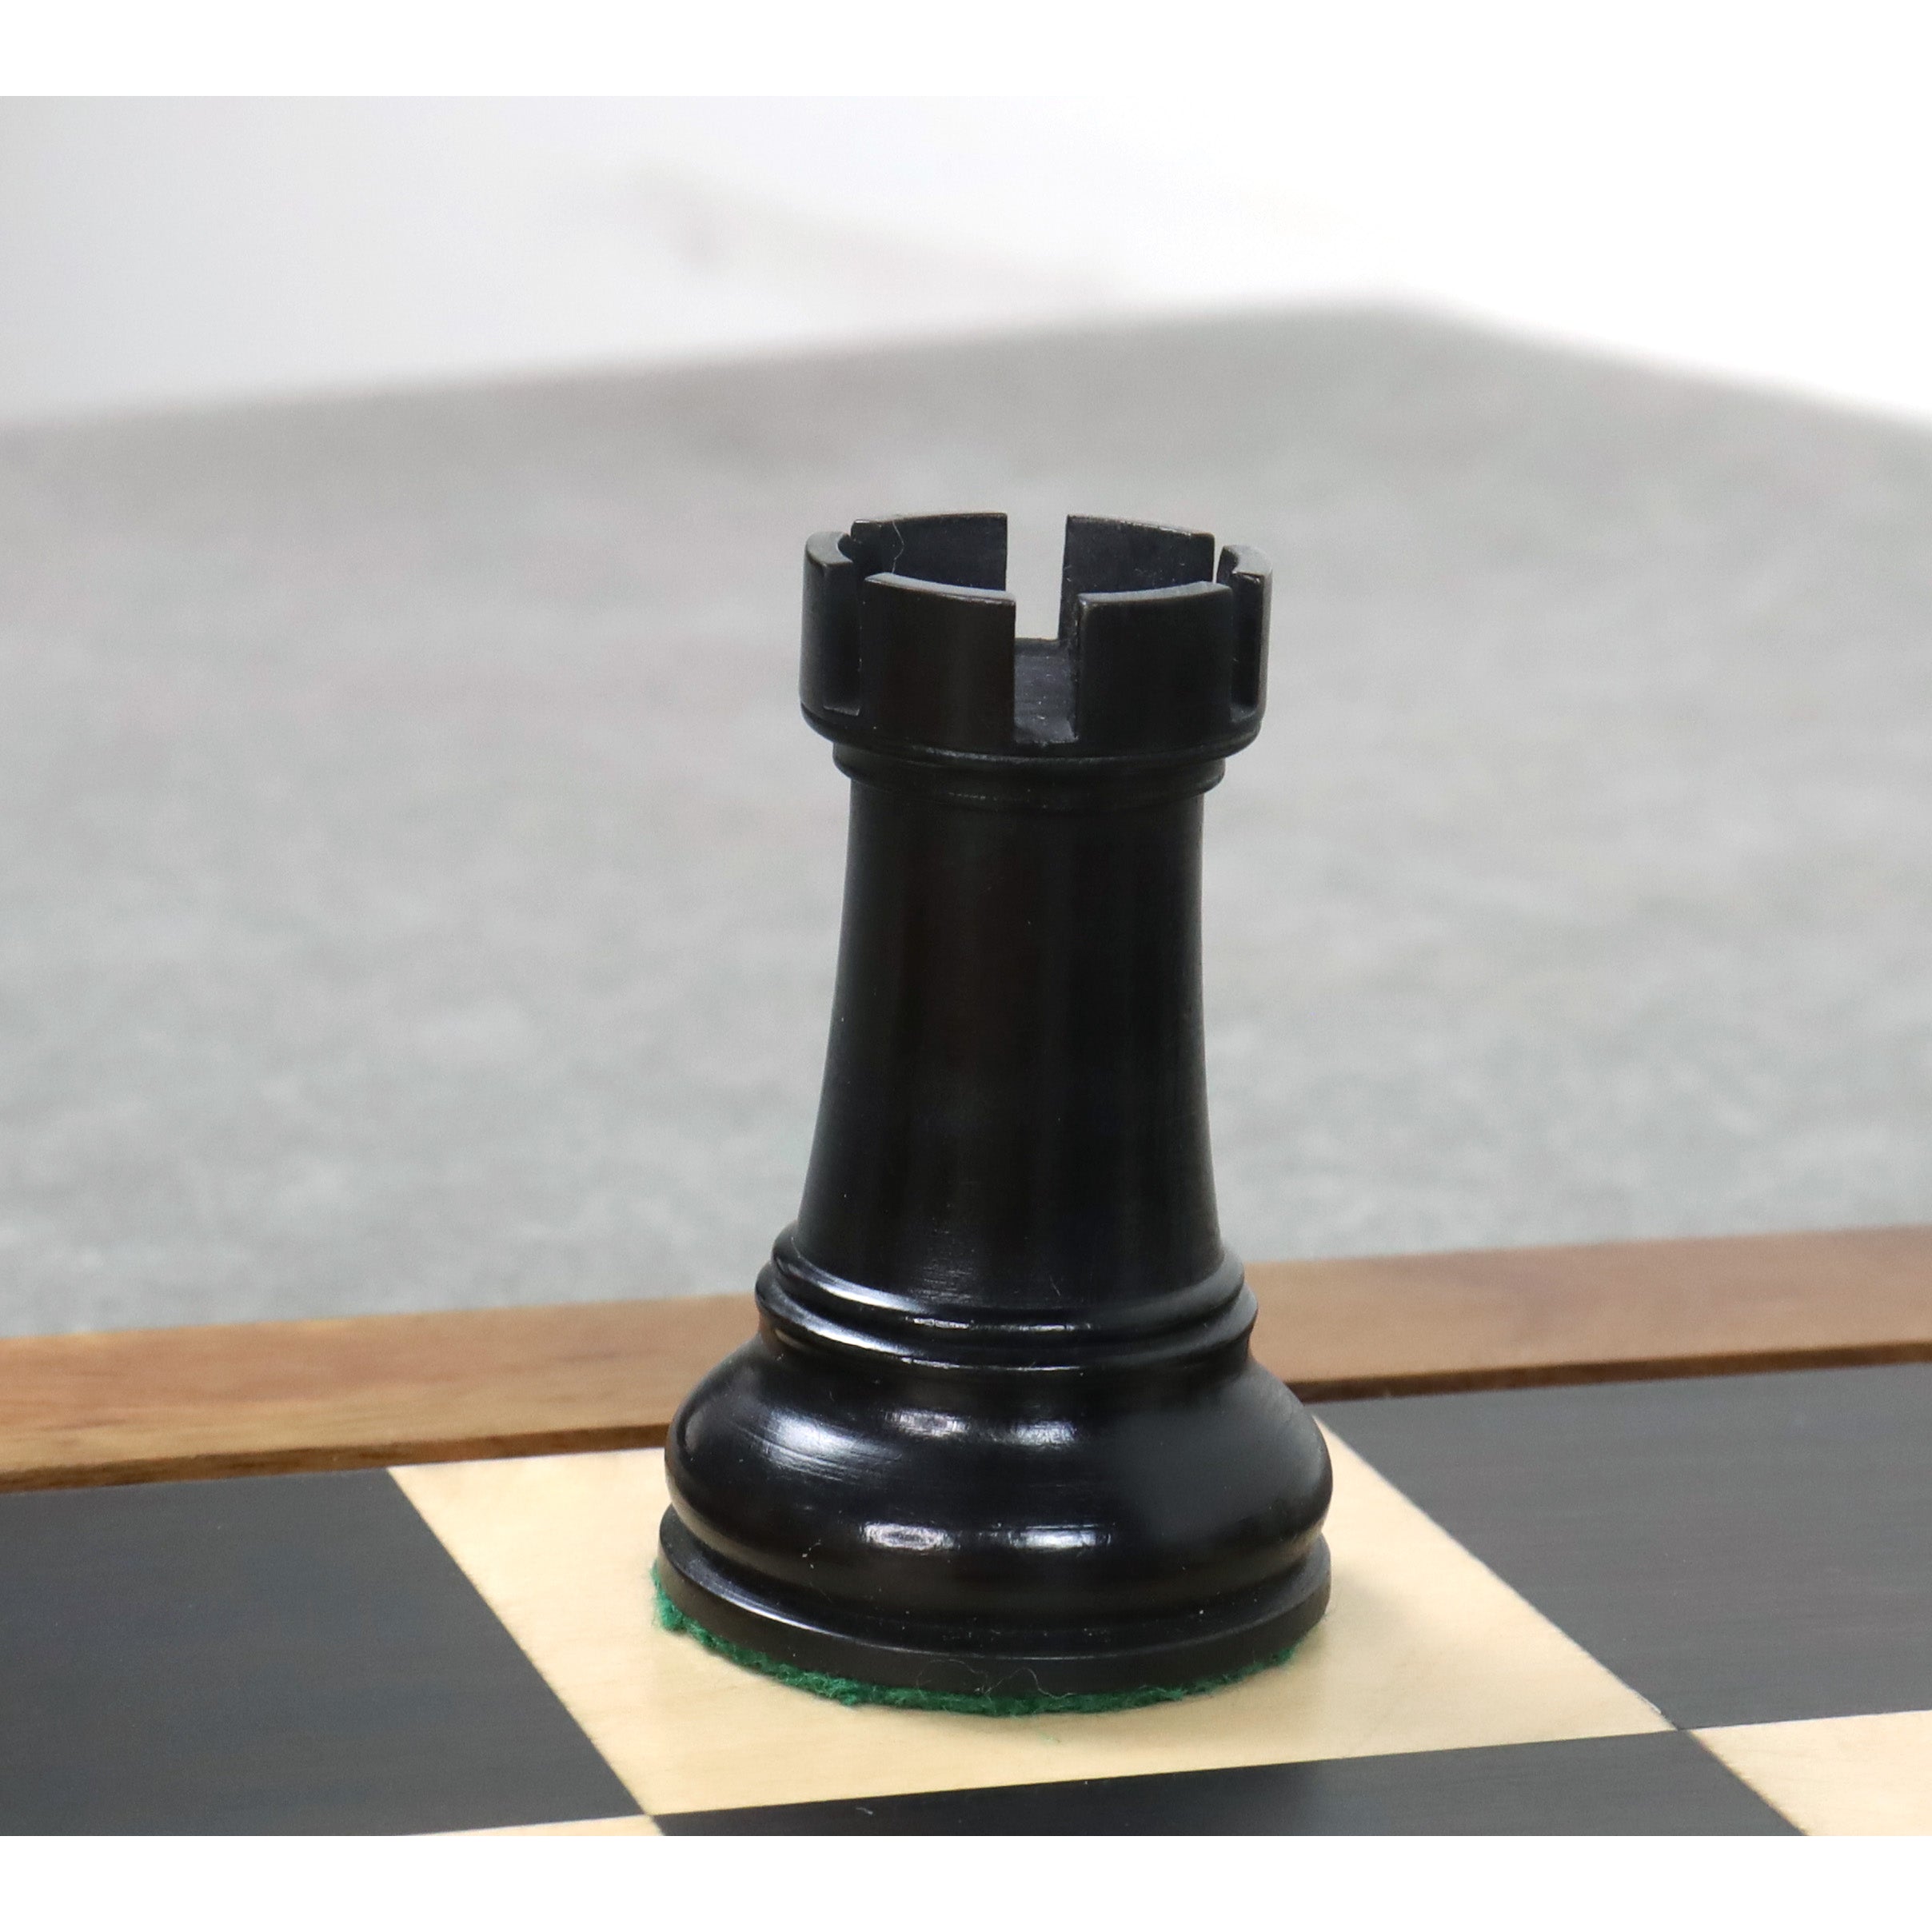 Slightly Imperfect Leningrad Staunton Chess Pieces Only Set - Ebonised Boxwood - 4" King